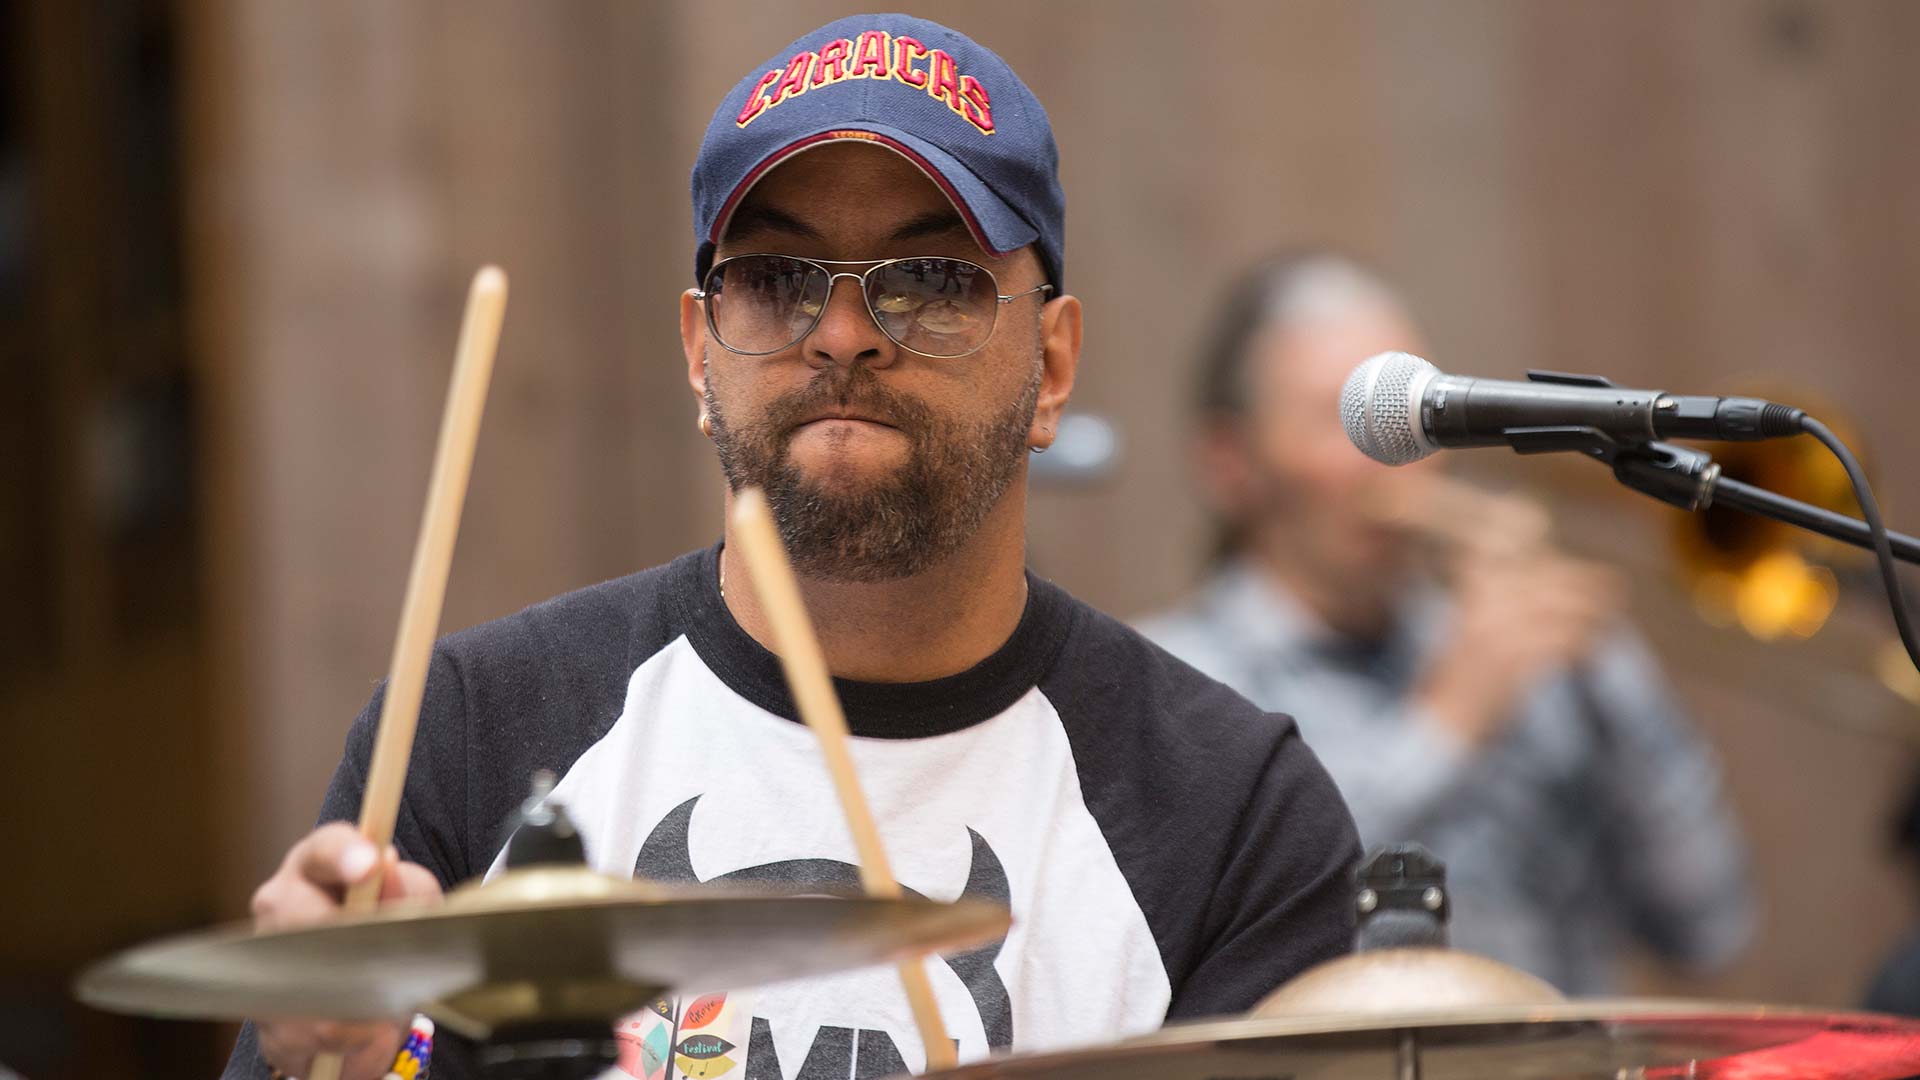 Omar Drumming